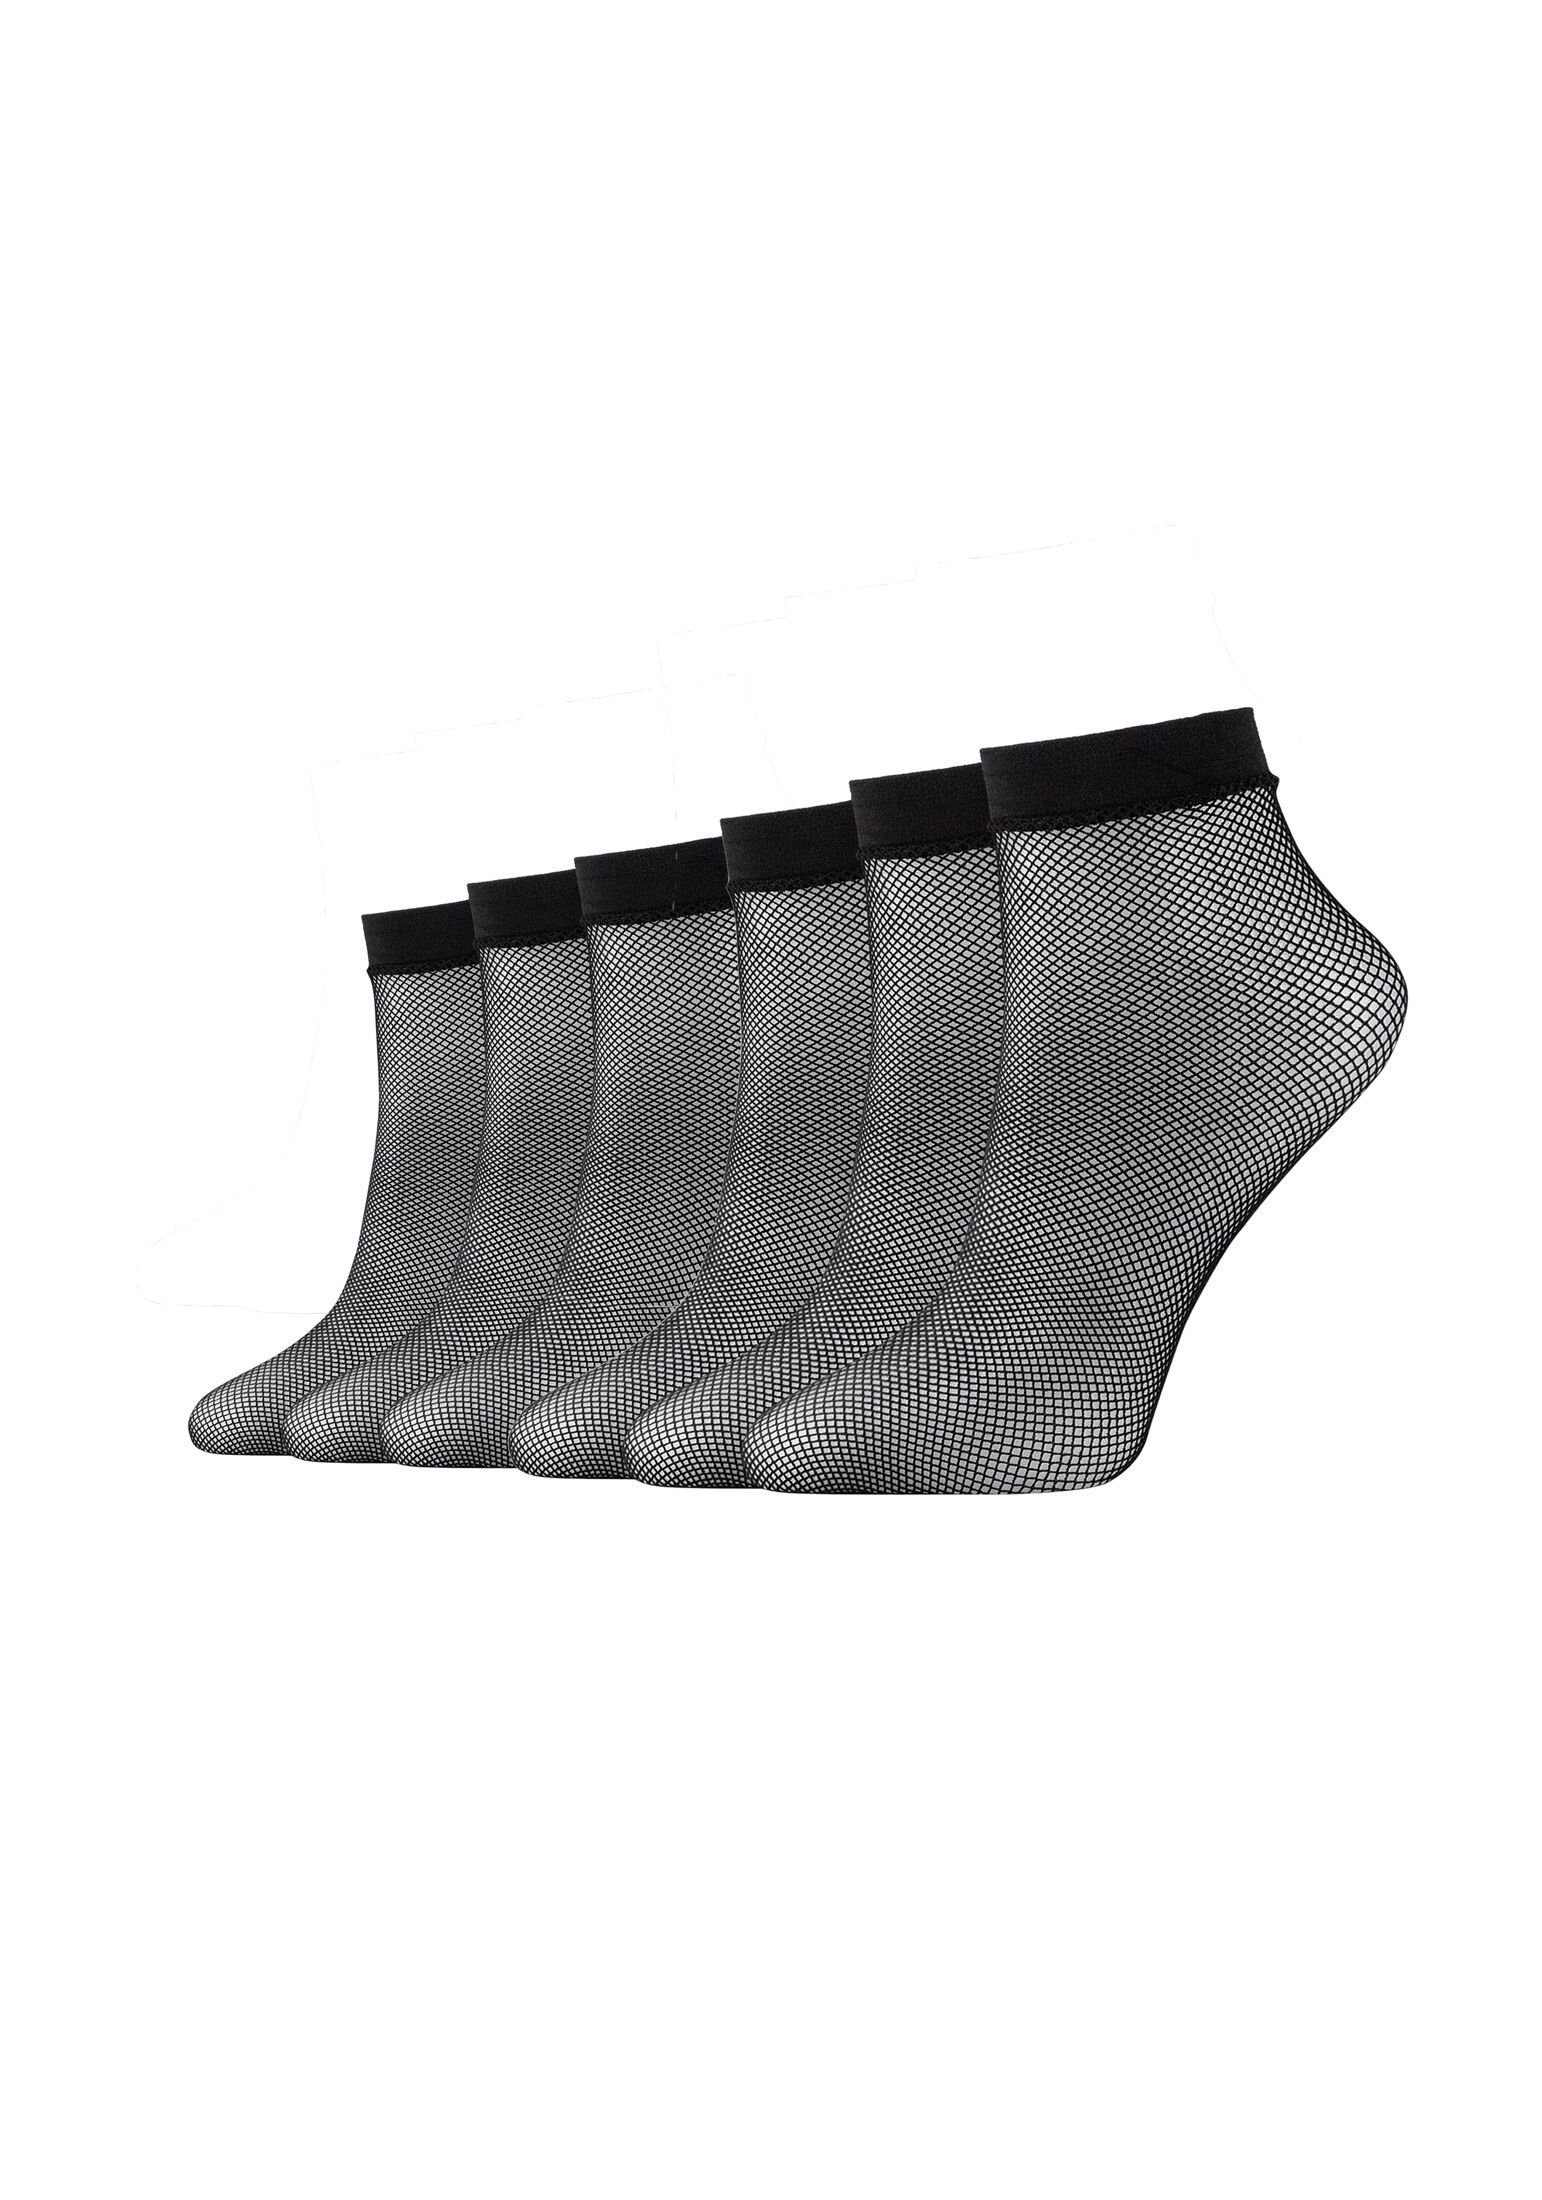 Camano Socken Socken 6er Pack black